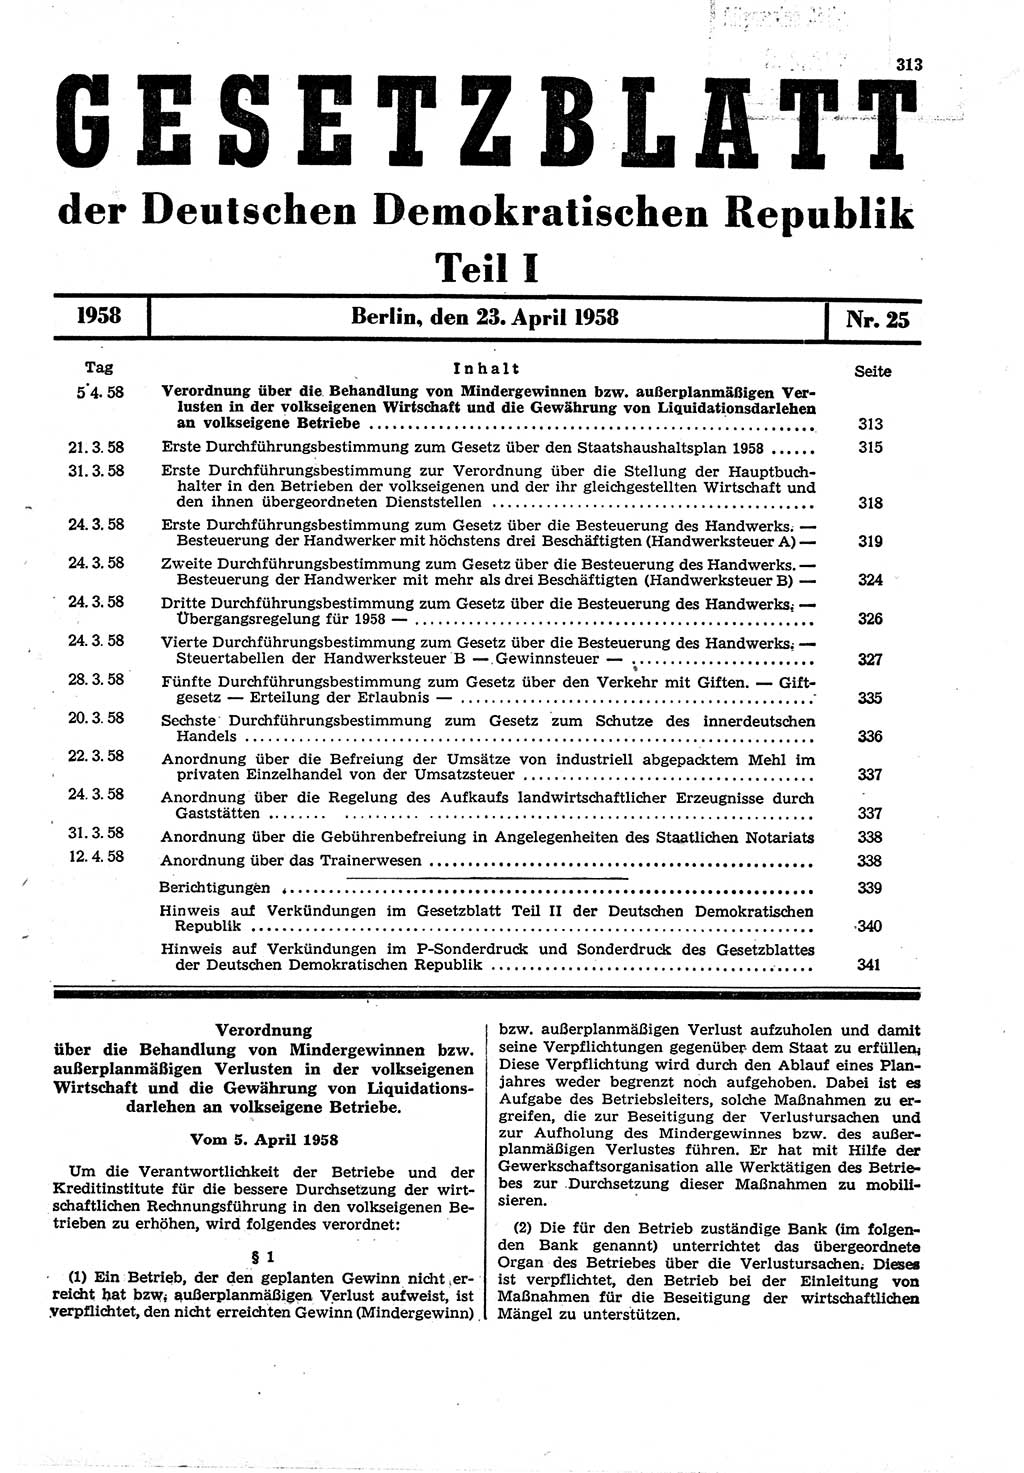 Gesetzblatt (GBl.) der Deutschen Demokratischen Republik (DDR) Teil Ⅰ 1958, Seite 313 (GBl. DDR Ⅰ 1958, S. 313)